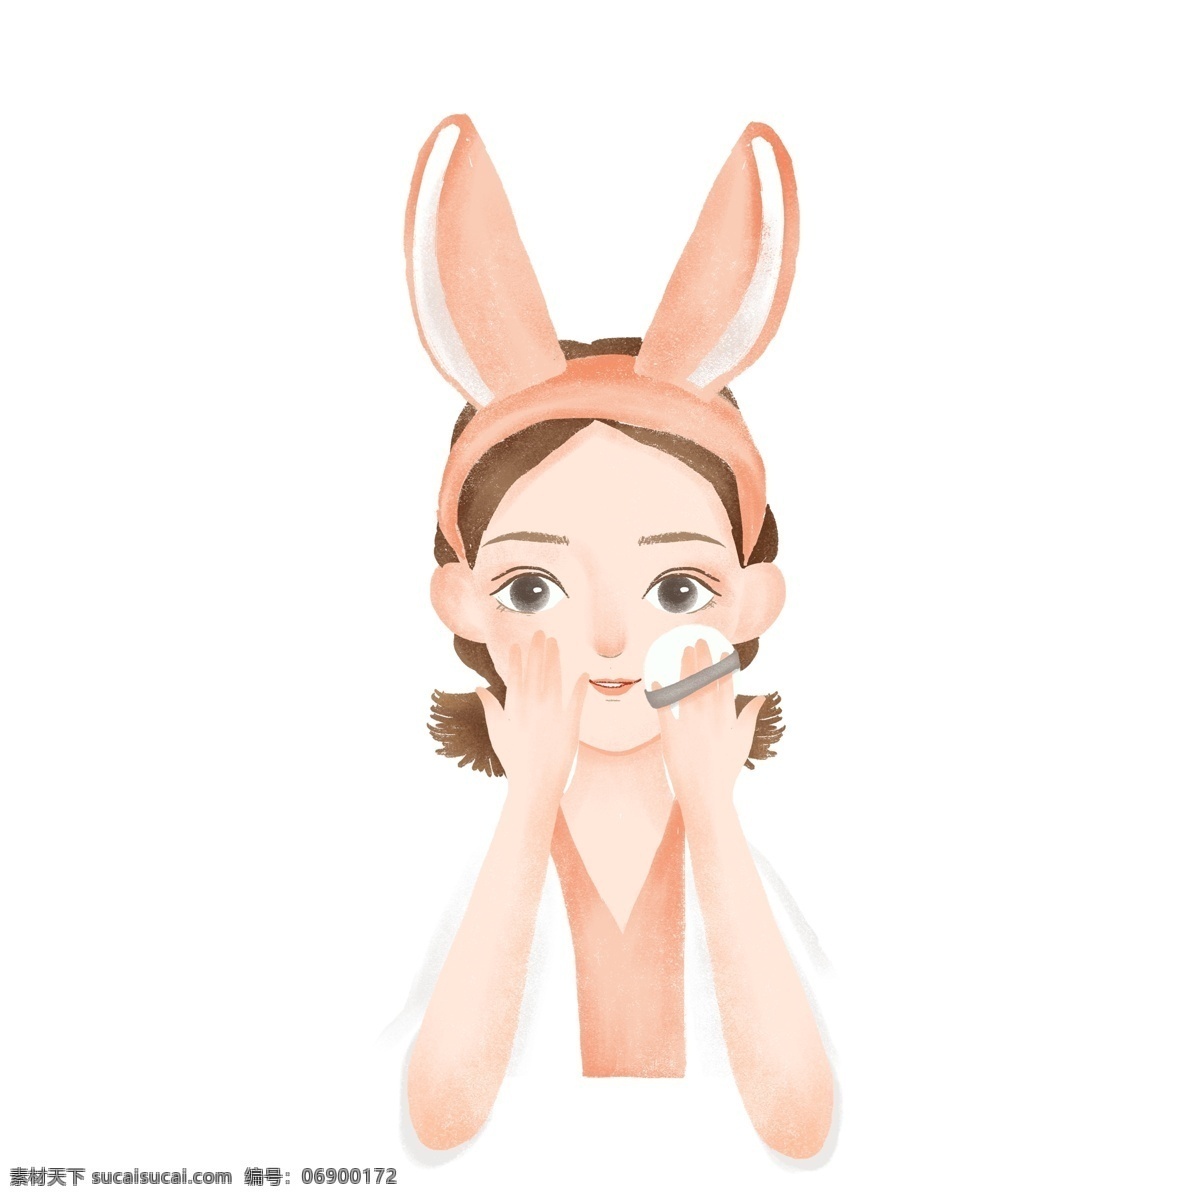 爱带 兔 耳朵 发卡 女孩 原创 元素 兔耳朵 化妆 设计元素 粉色 原创元素